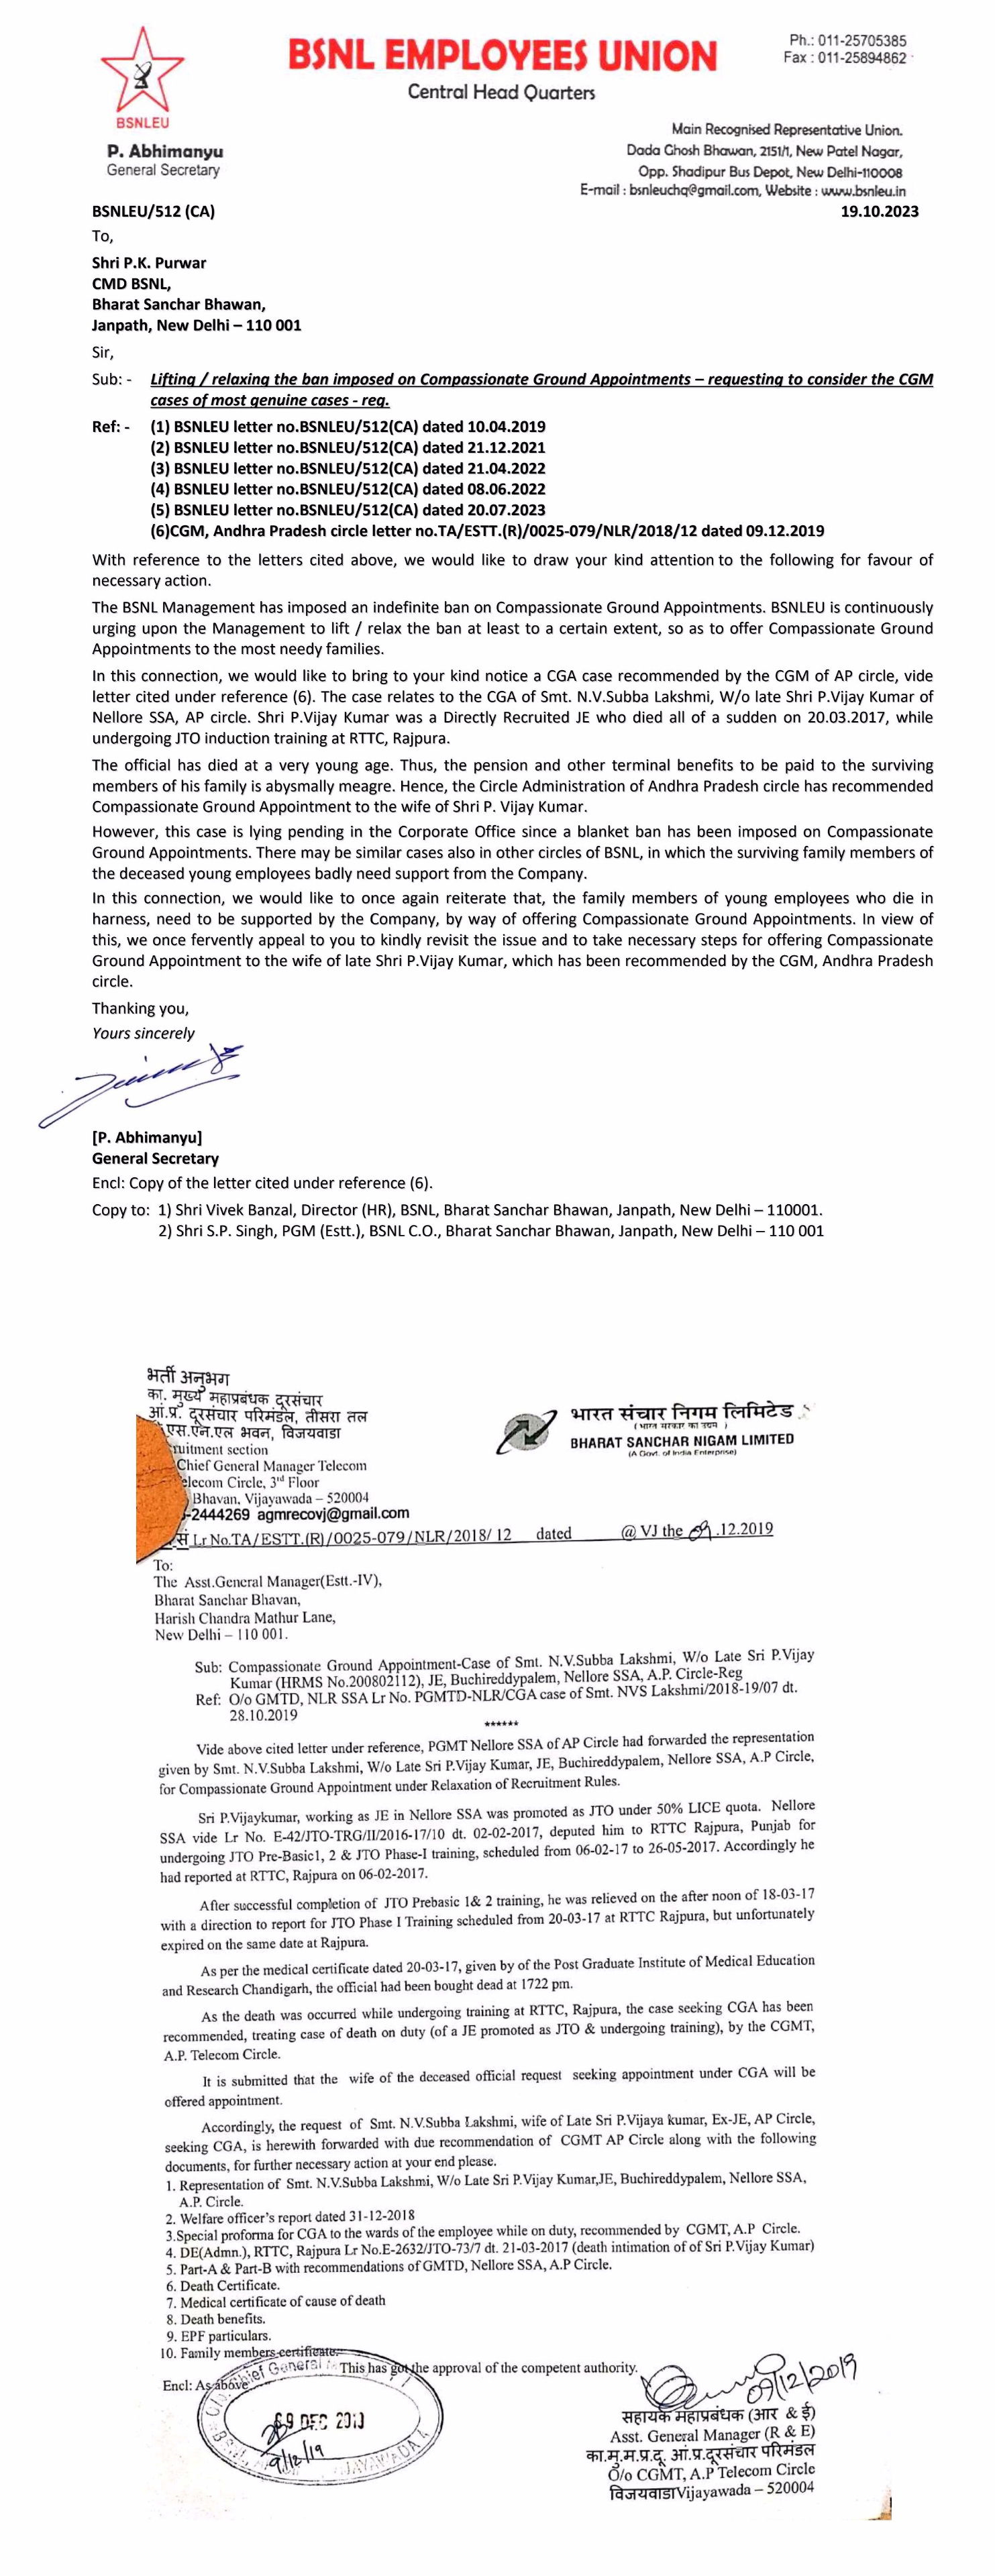 *अनुकंपा ग्राउंड अपॉइंटमेंट्सवरील बंदी उठवा / शिथिल करा - BSNLEU ने CMD BSNL ला पत्र लिहिले.*    Image 